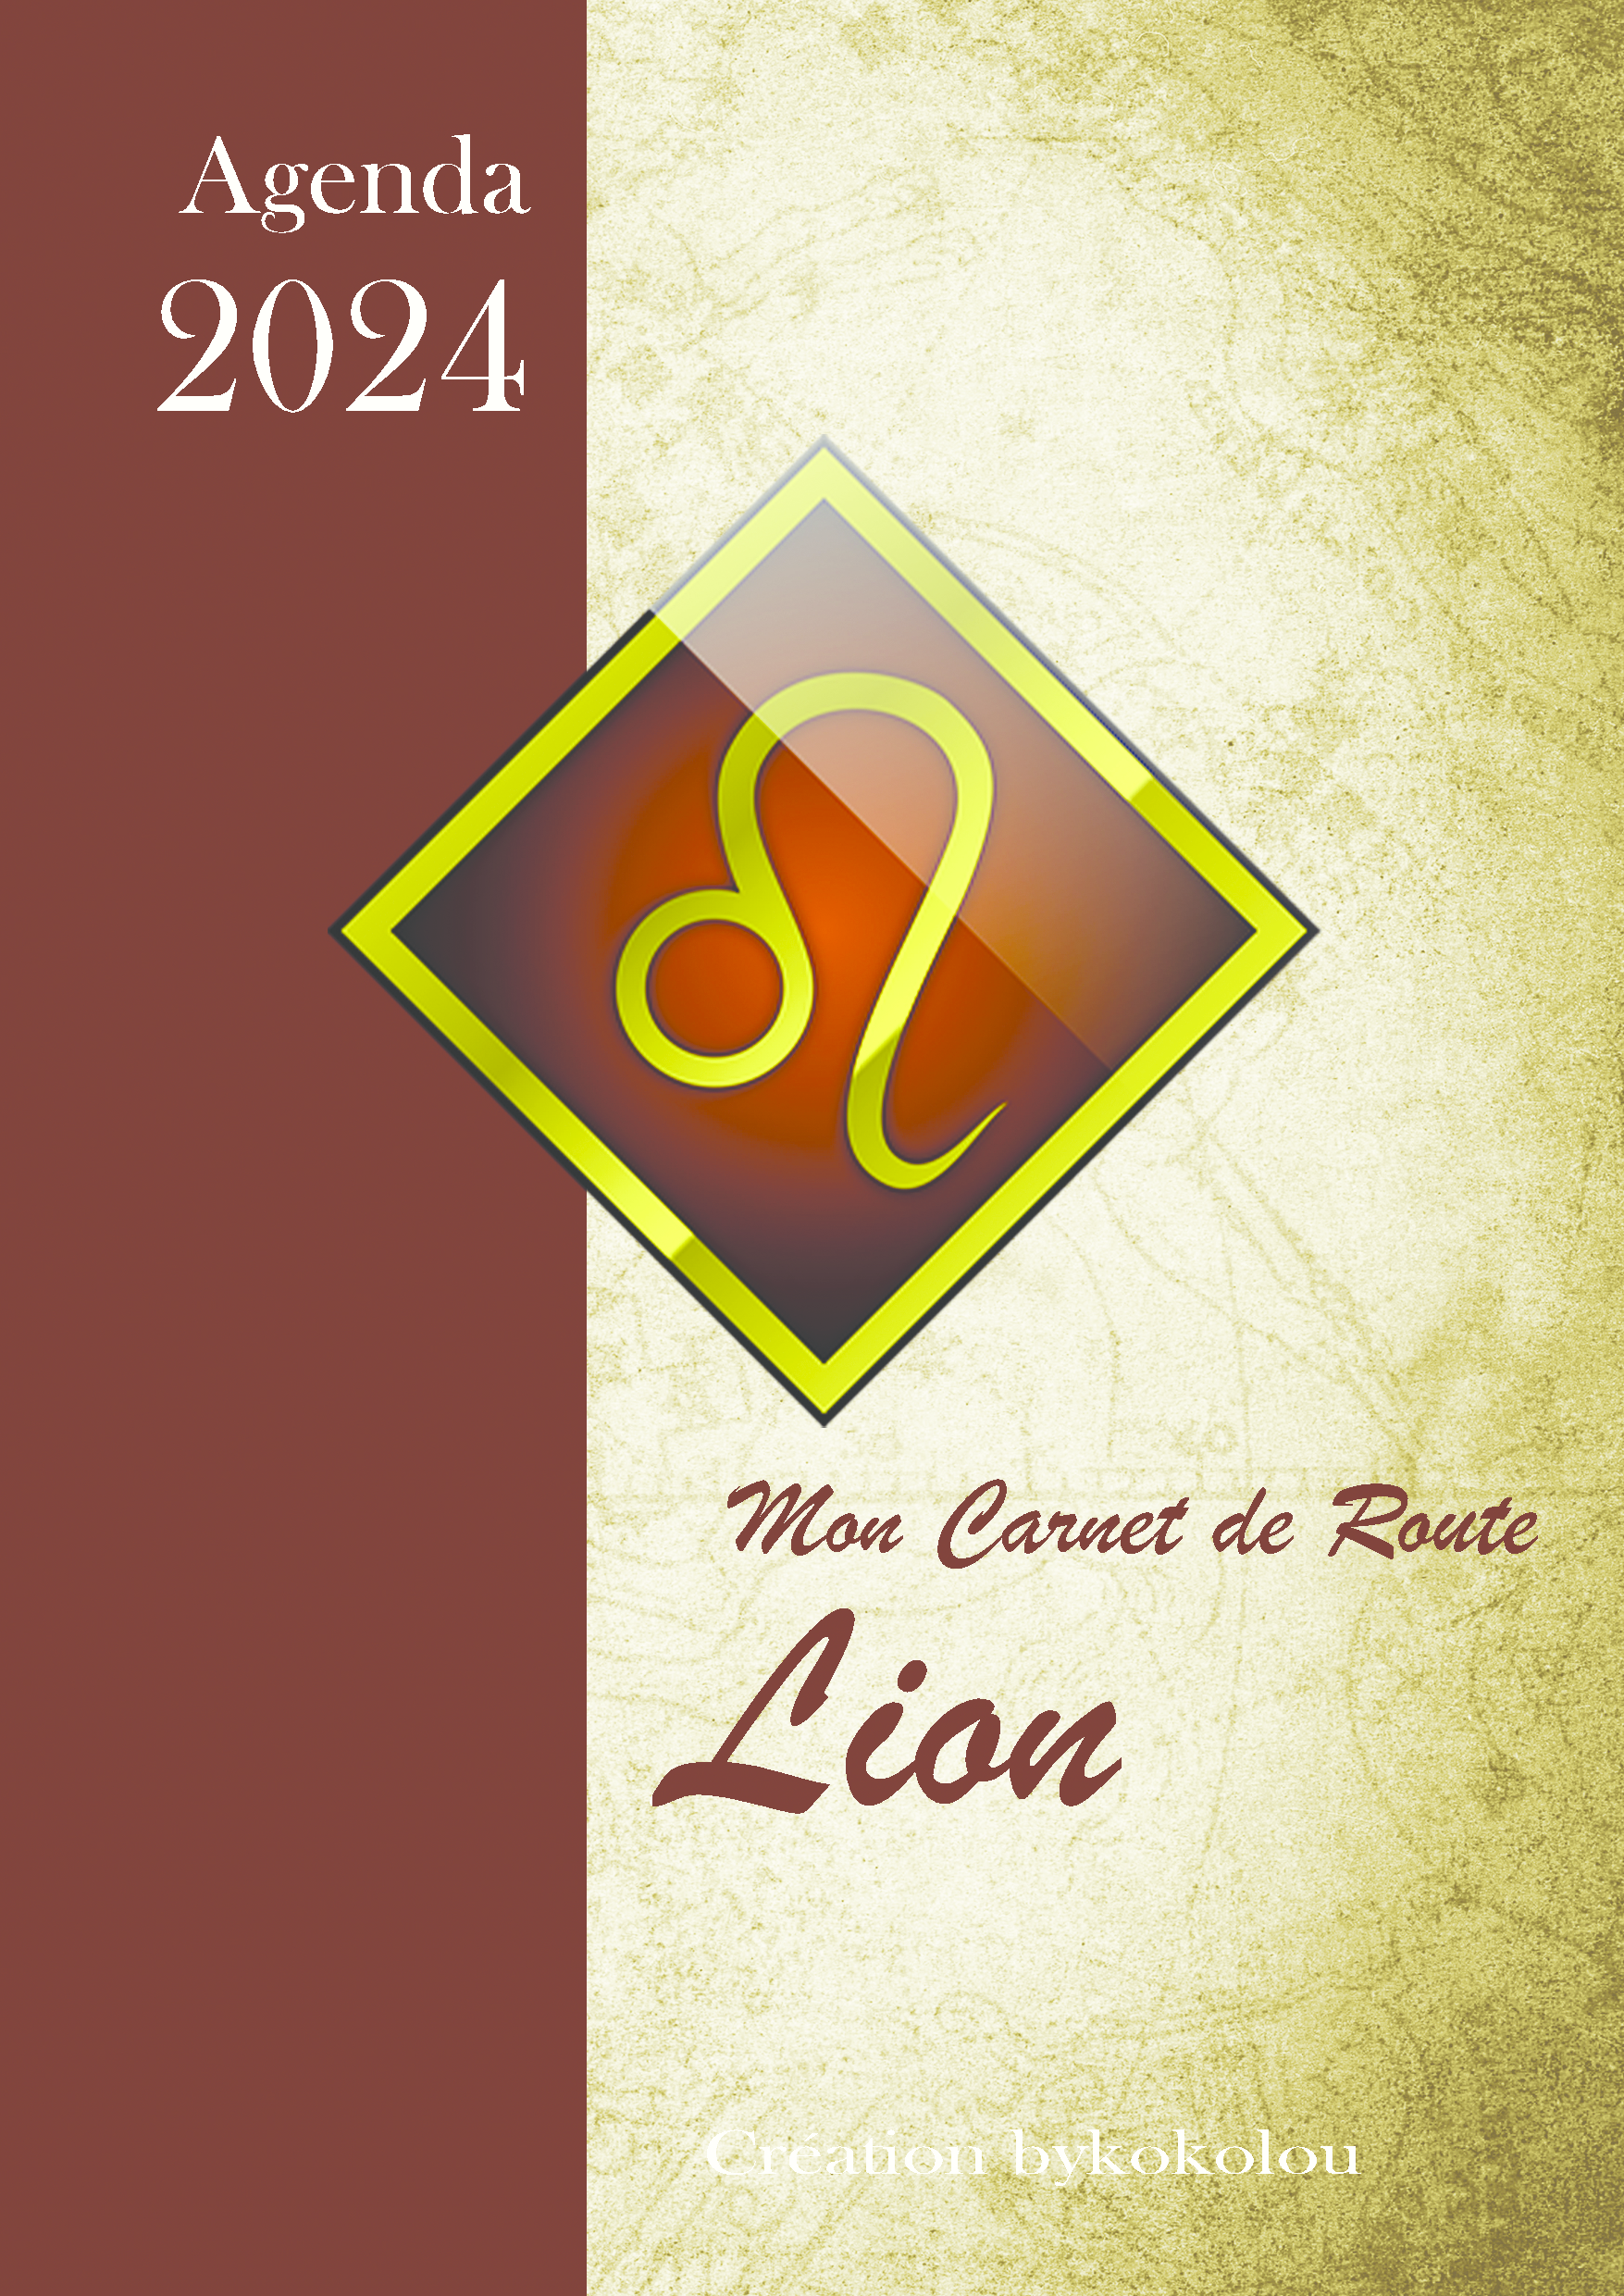 Agenda 2024 - LION - Carnet de route - Joan Pruvost